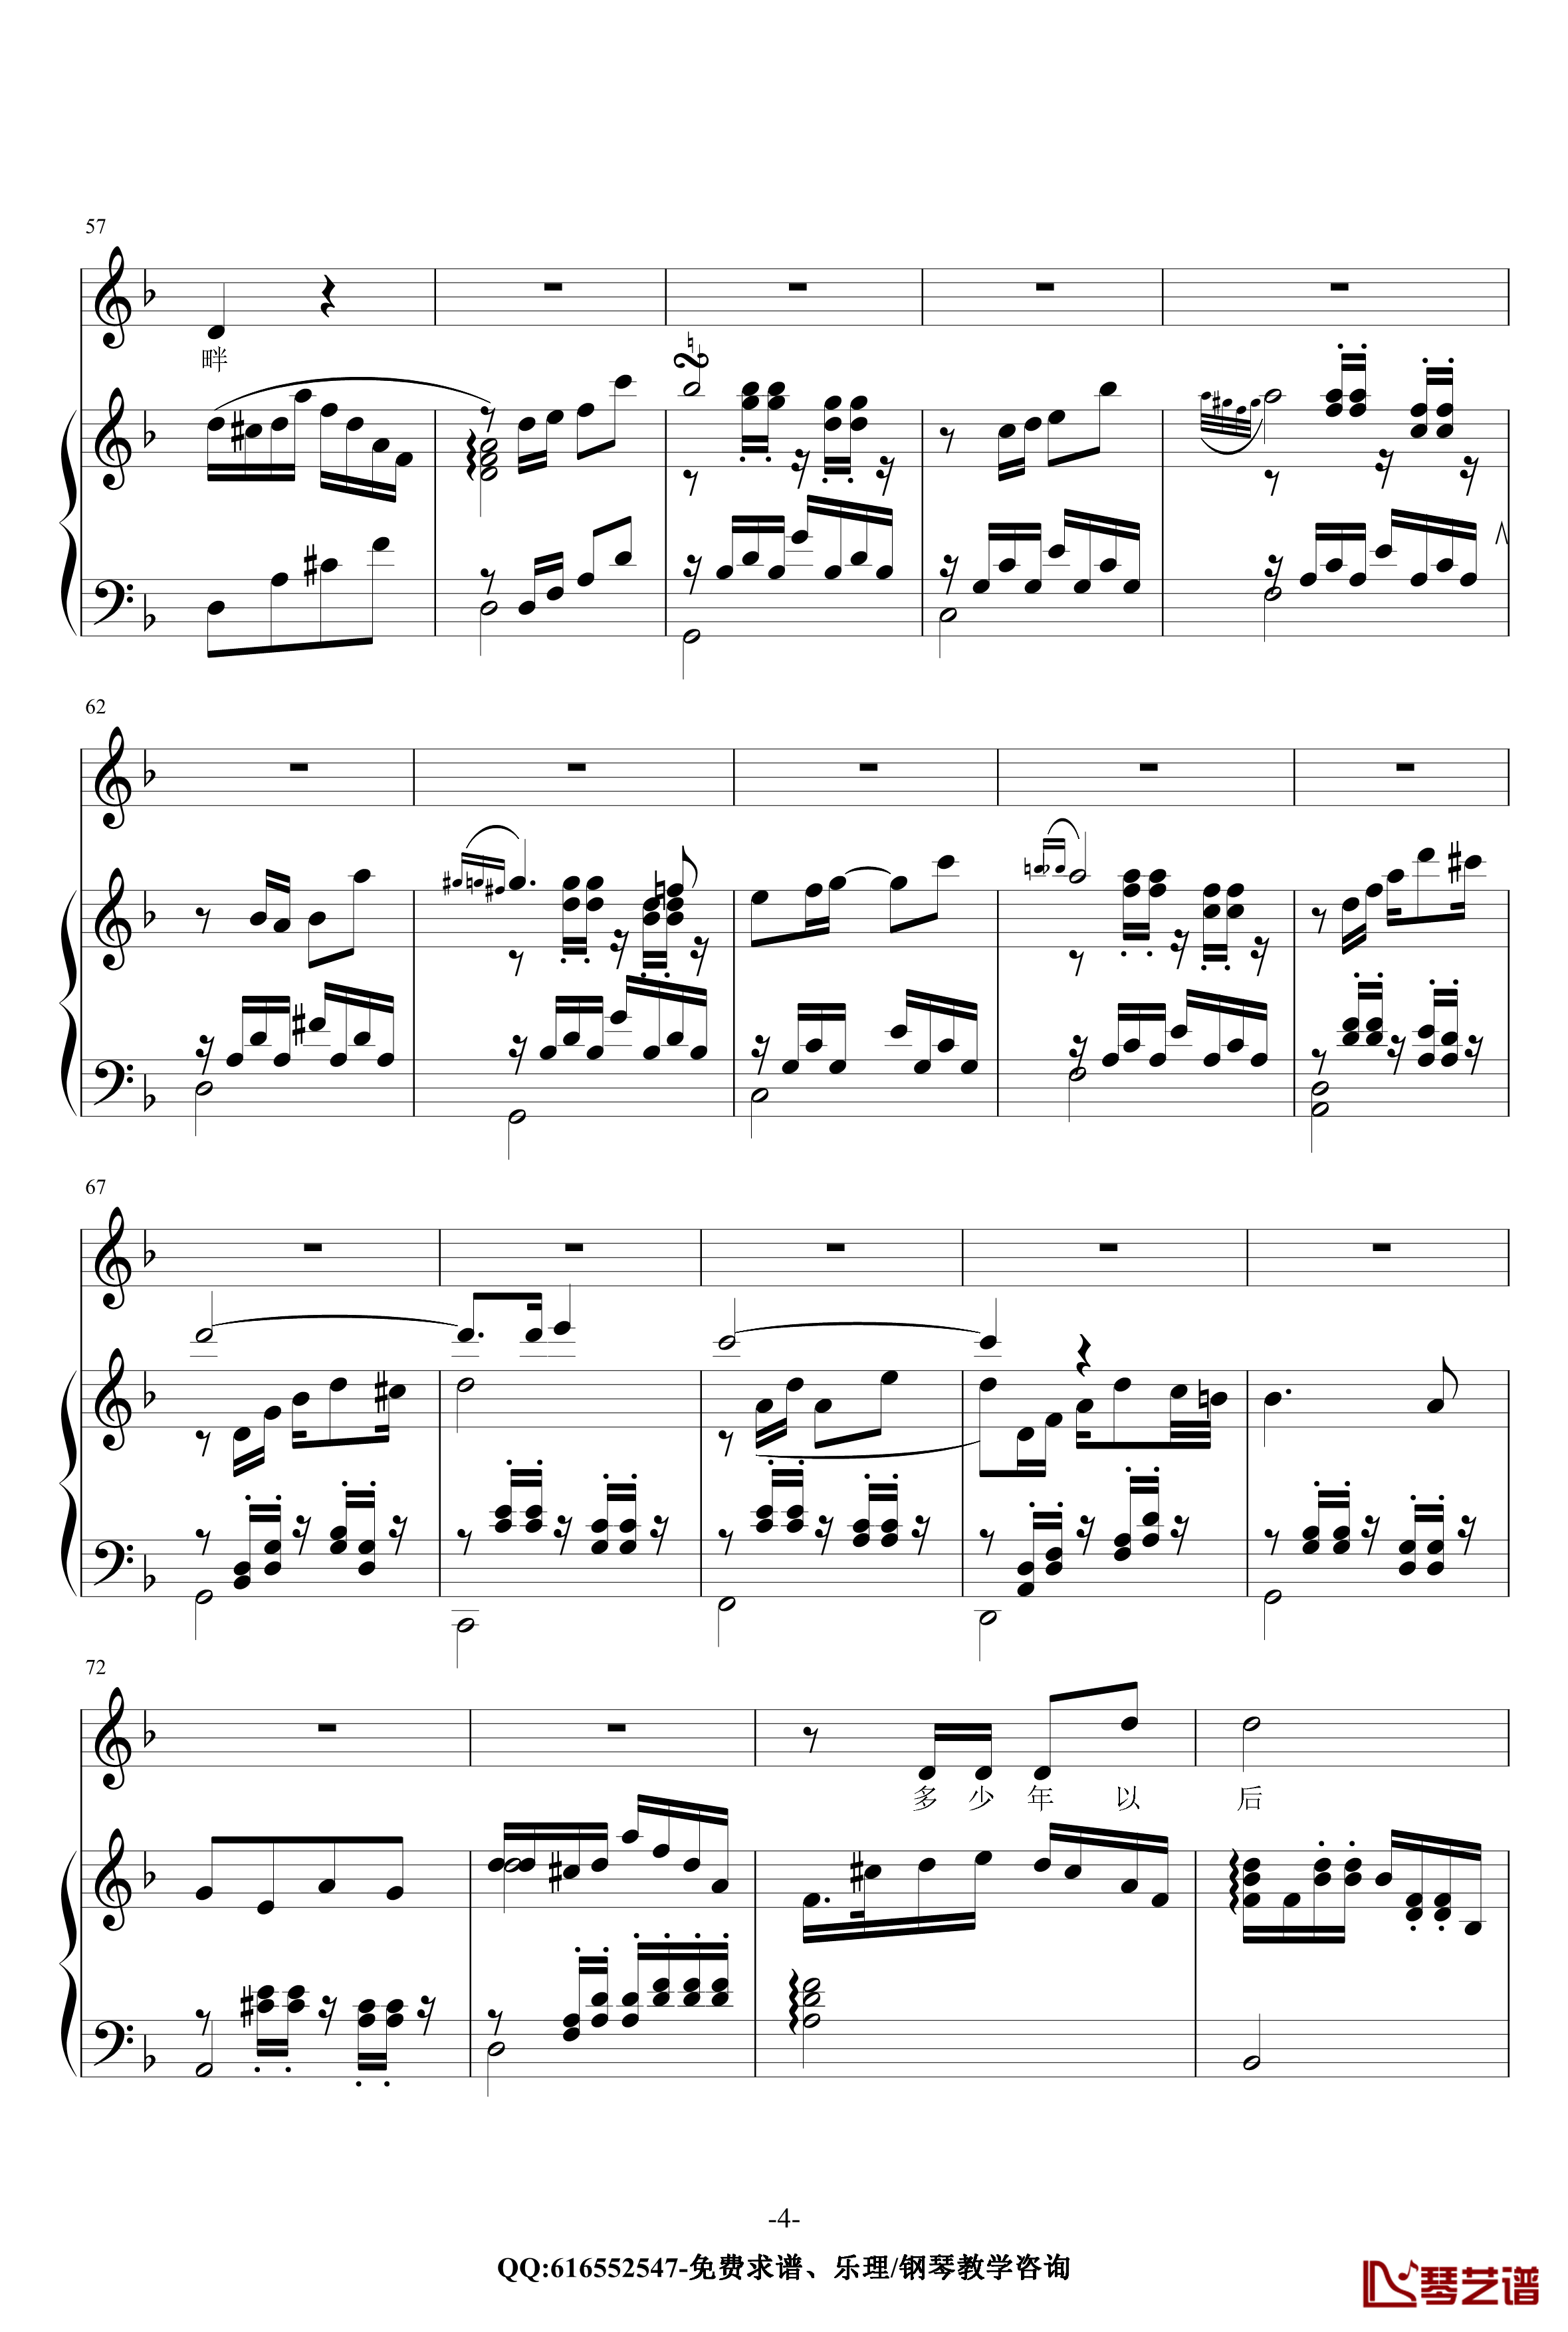 贝加尔湖畔钢琴谱-金龙鱼原声伴奏版170616-李健4